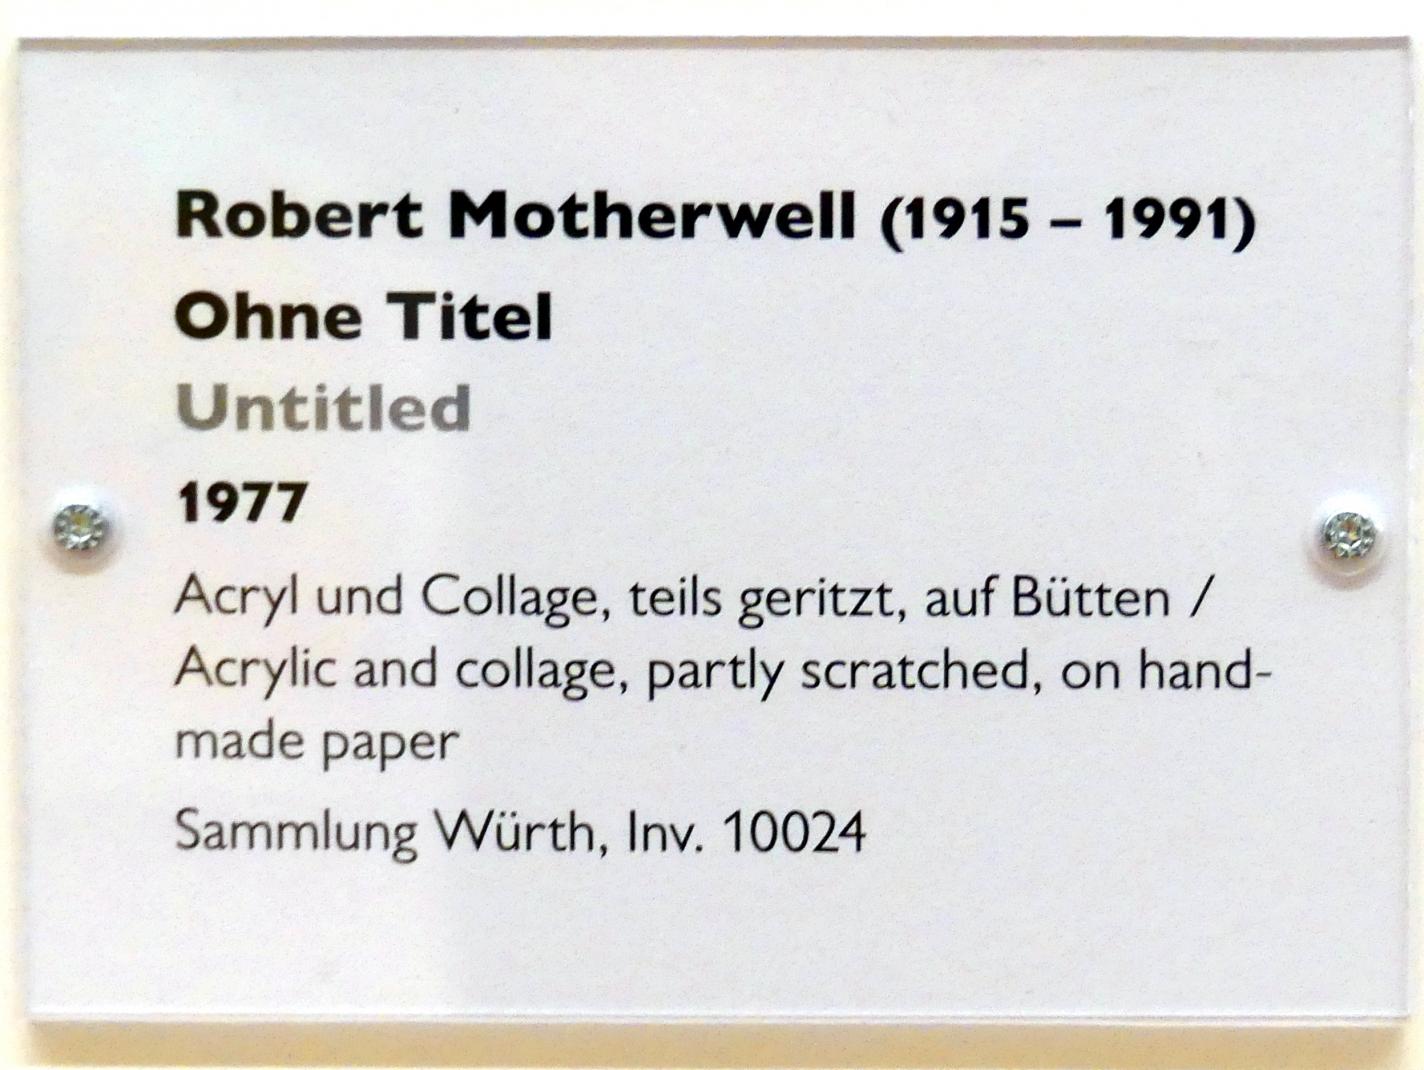 Robert Motherwell (1956–1977), Ohne Titel, Schwäbisch Hall, Kunsthalle Würth, Ausstellung "Lust auf mehr" vom 30.09.2019 - 20.09.2020, Obergeschoss, 1977, Bild 3/3